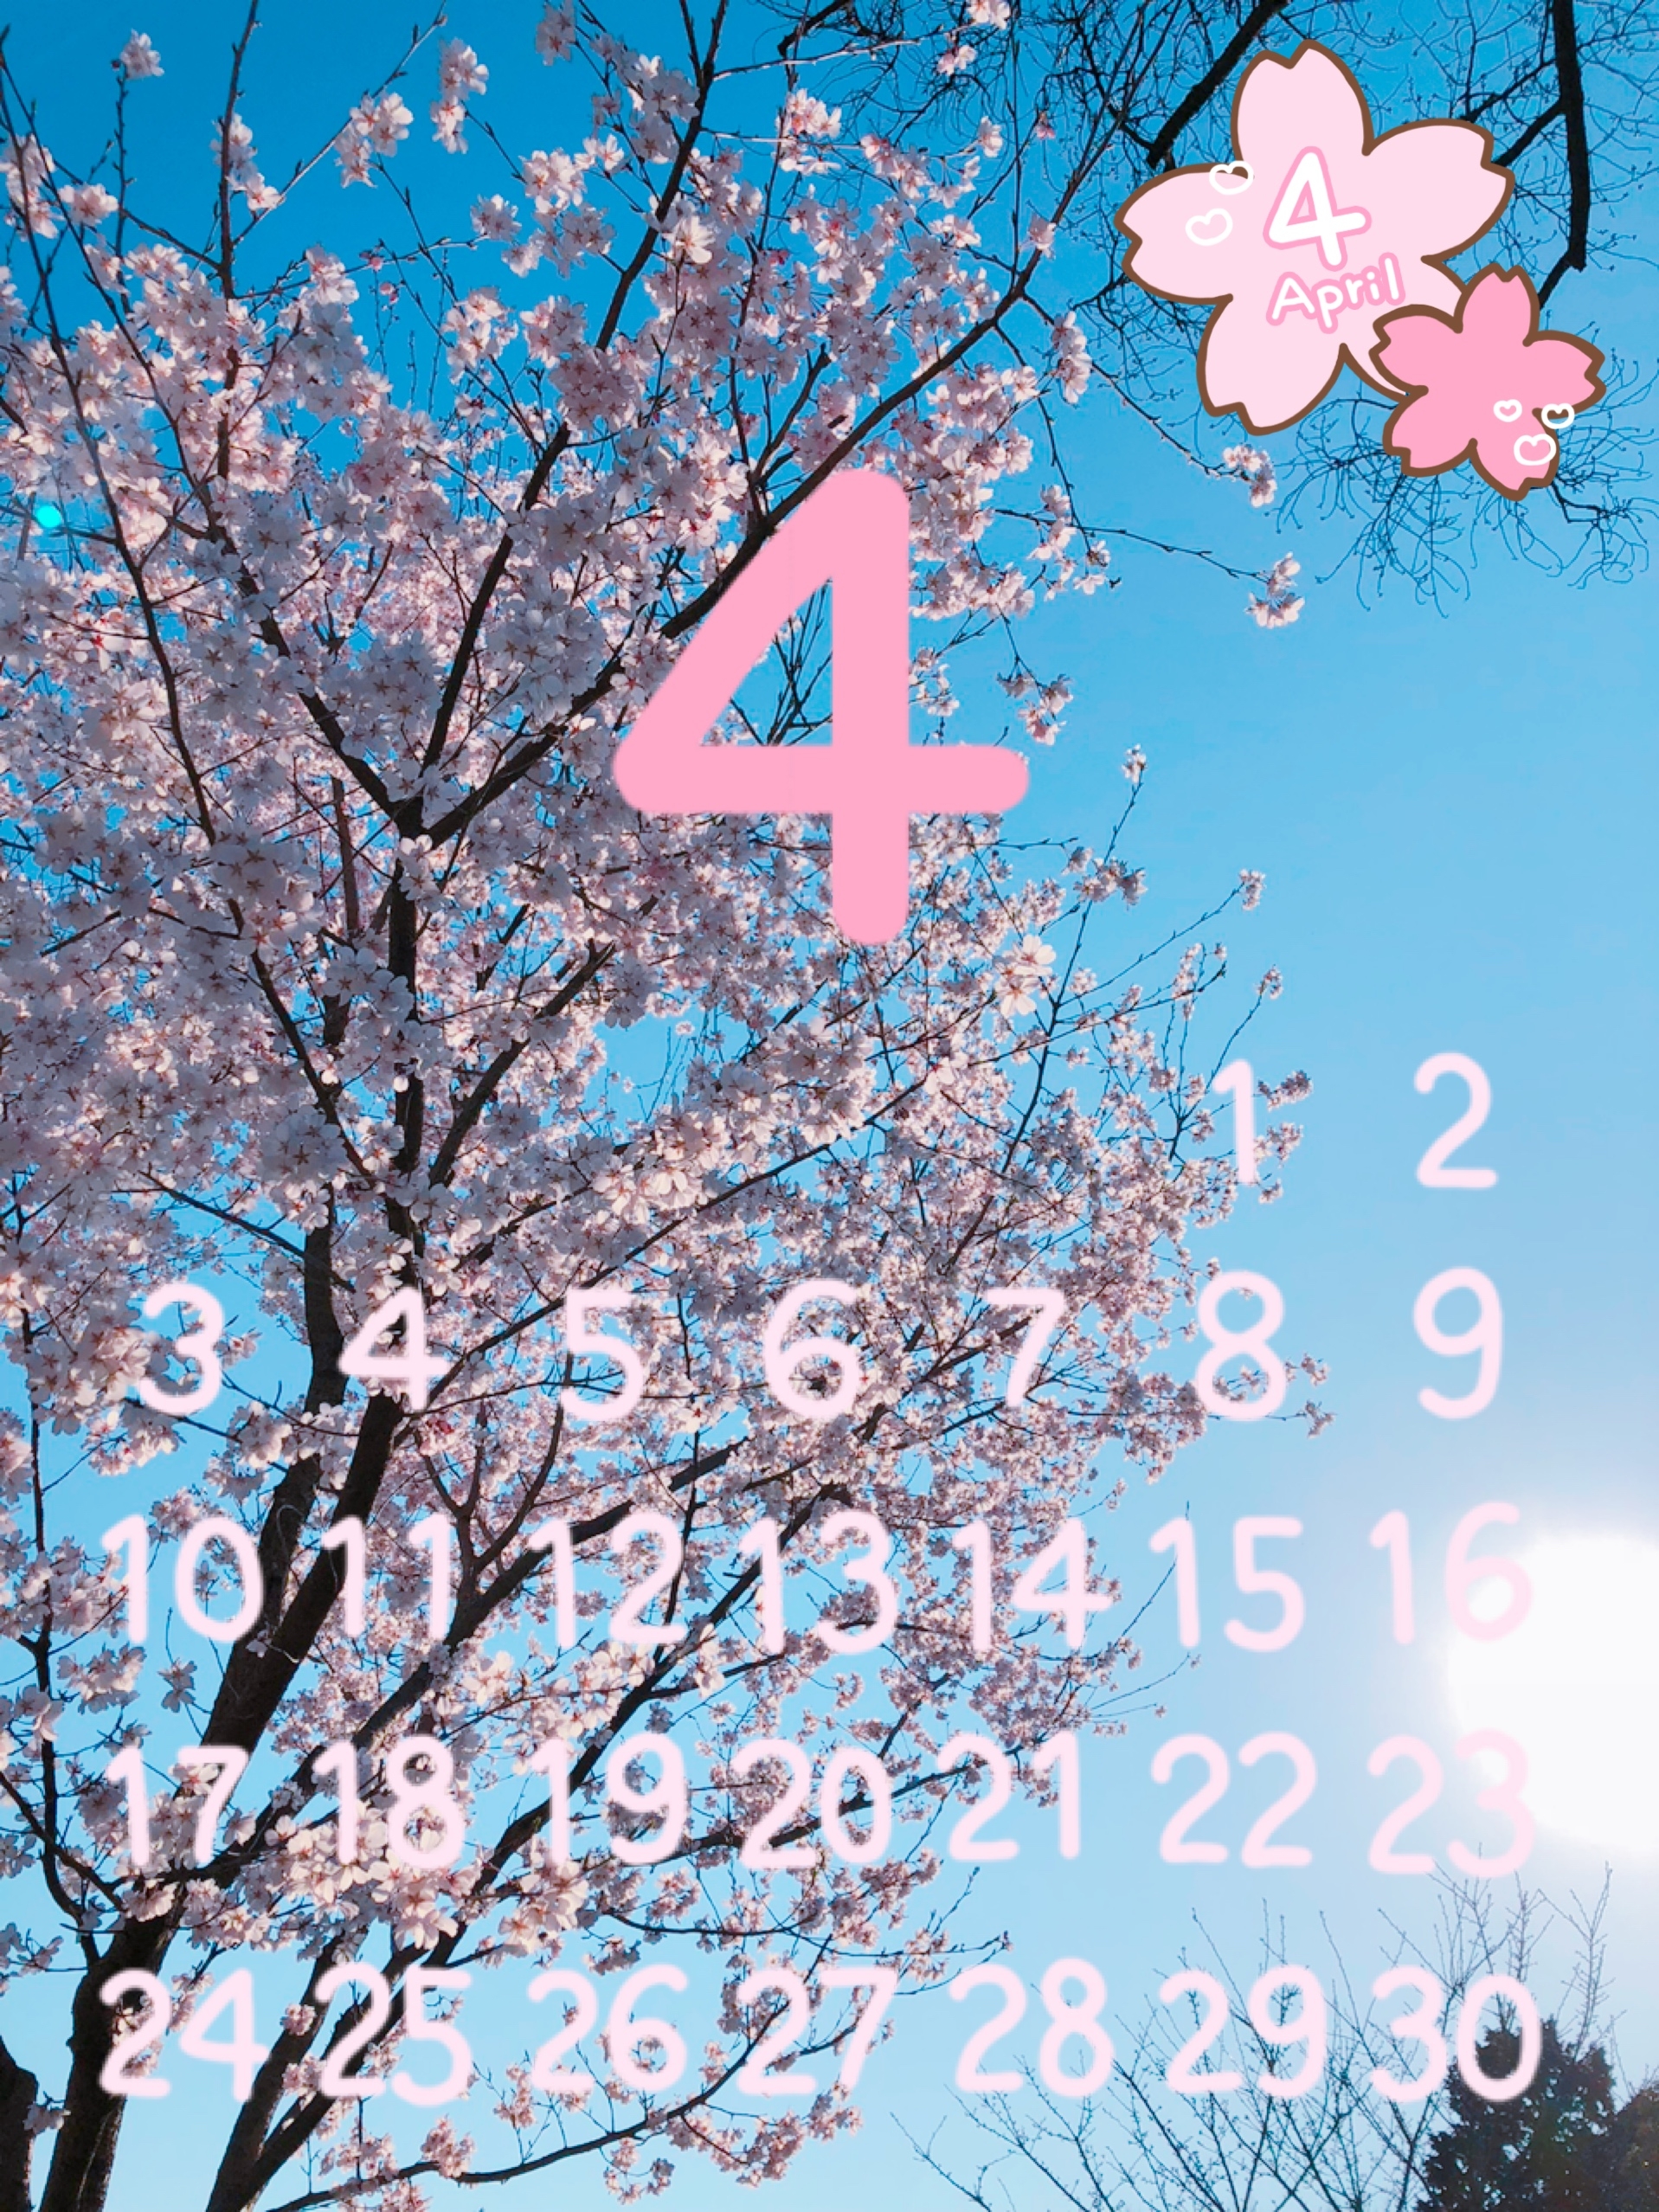 桜の写真でカレンダー作りましたヽ(*＾ω＾*)ﾉ